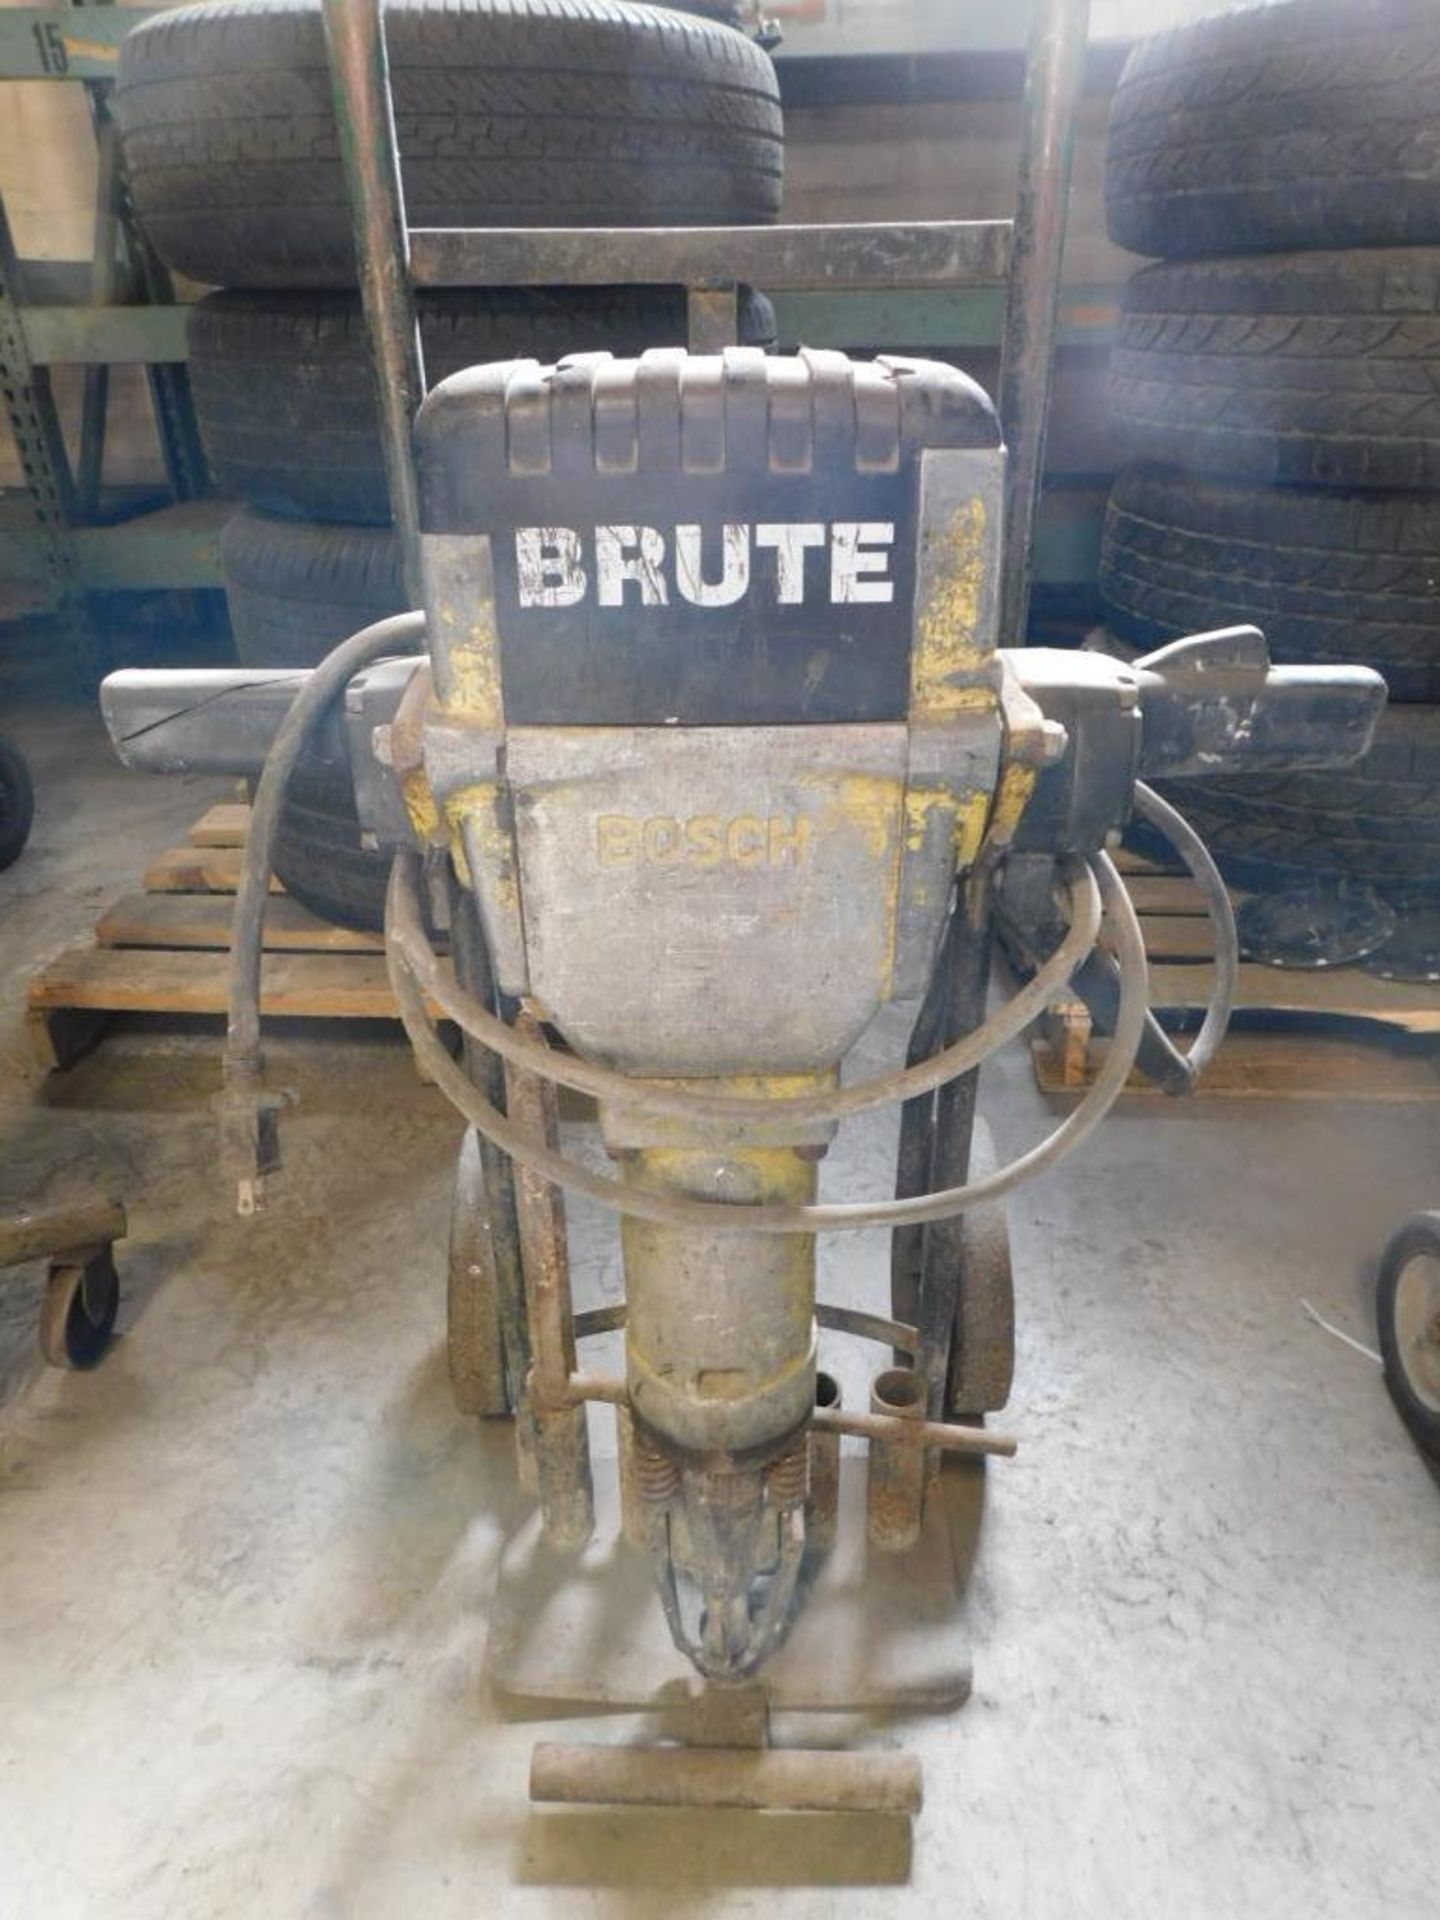 Bosch Brute Electric Concrete Breaker on Cart w/(1) Bit - Image 3 of 3